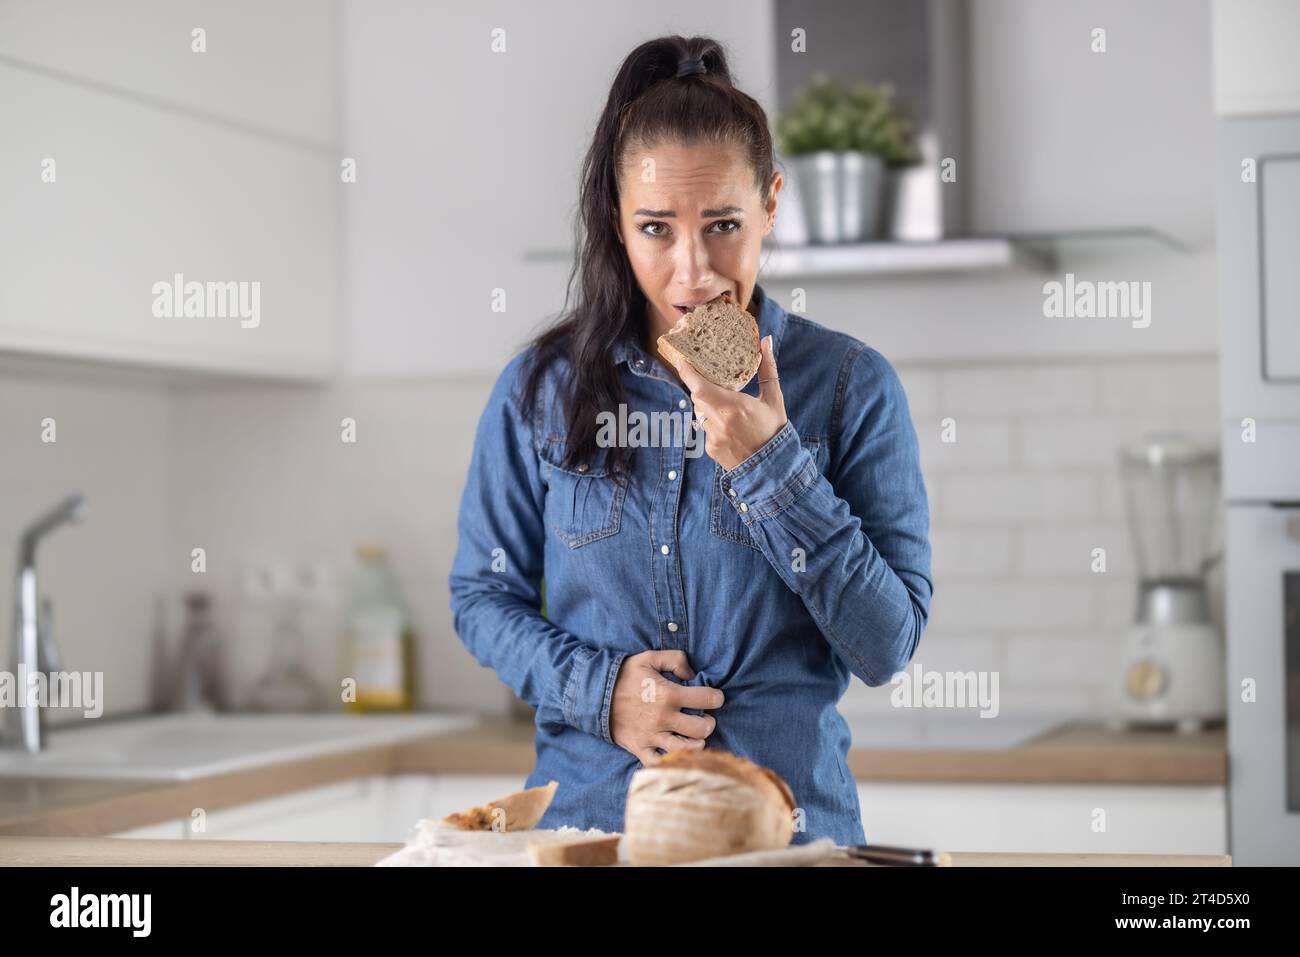 Frau kann kein Brot und Getreideprodukte essen wegen Gluten-Intoleranz. Eine junge Zöliakie leidet unter Bauchschmerzen, nachdem sie frisches Brot gegessen hat. Stockfoto